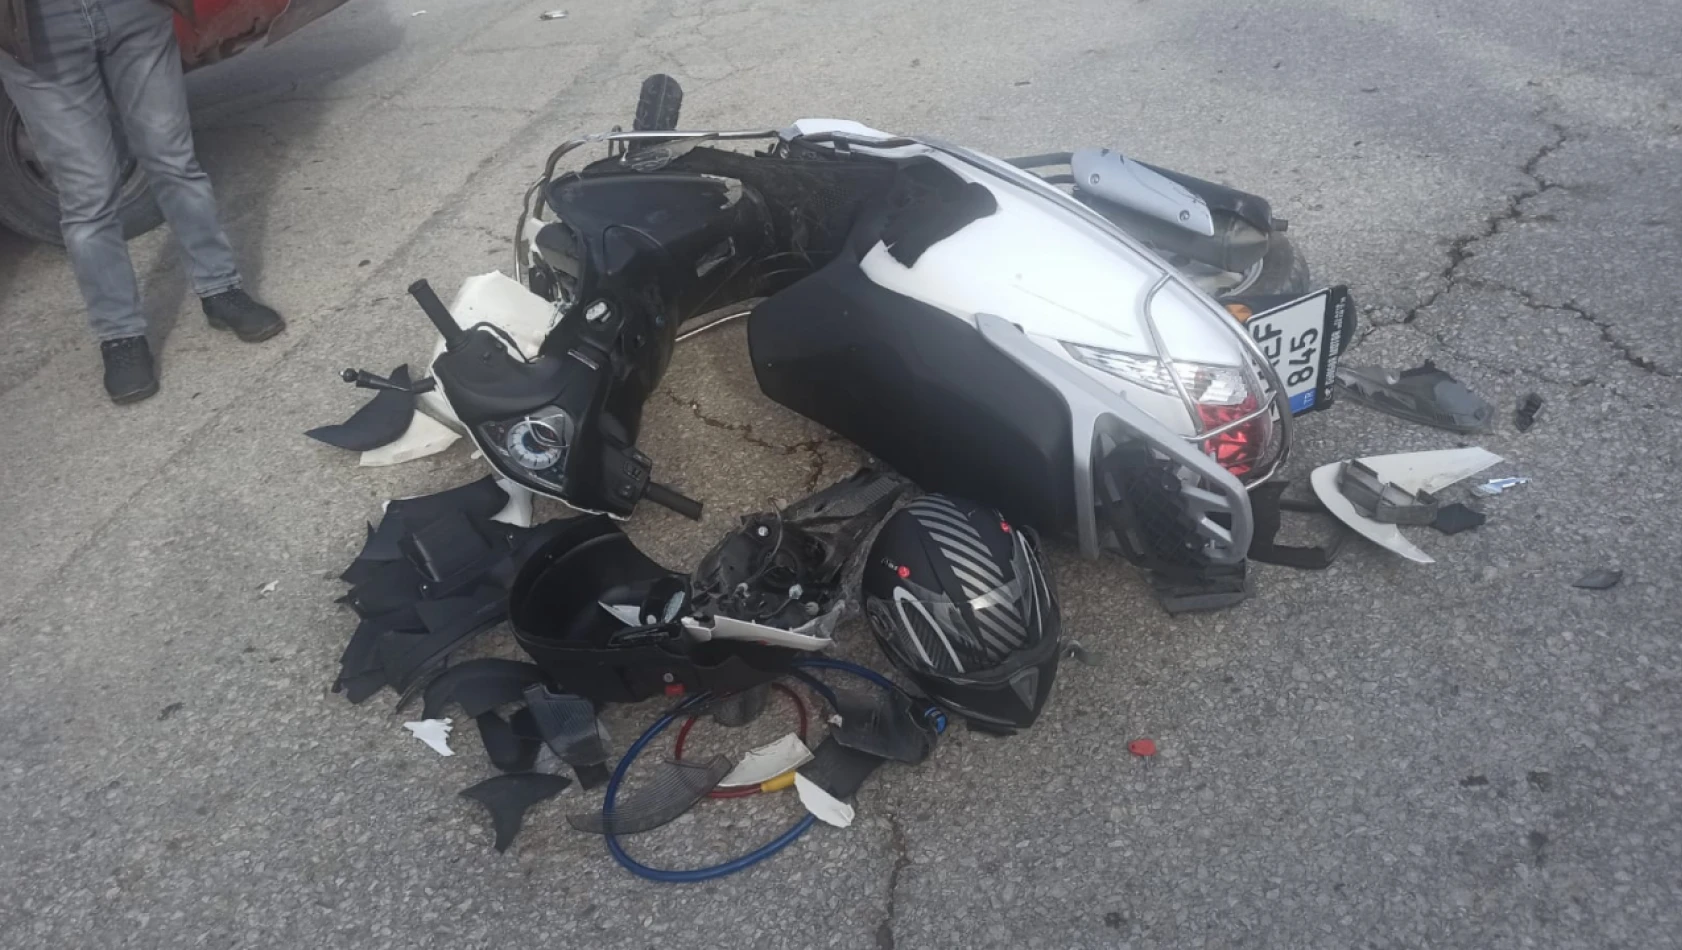 Elazığ'da motosiklet ile otomobil çarpıştı: 1 yaralı